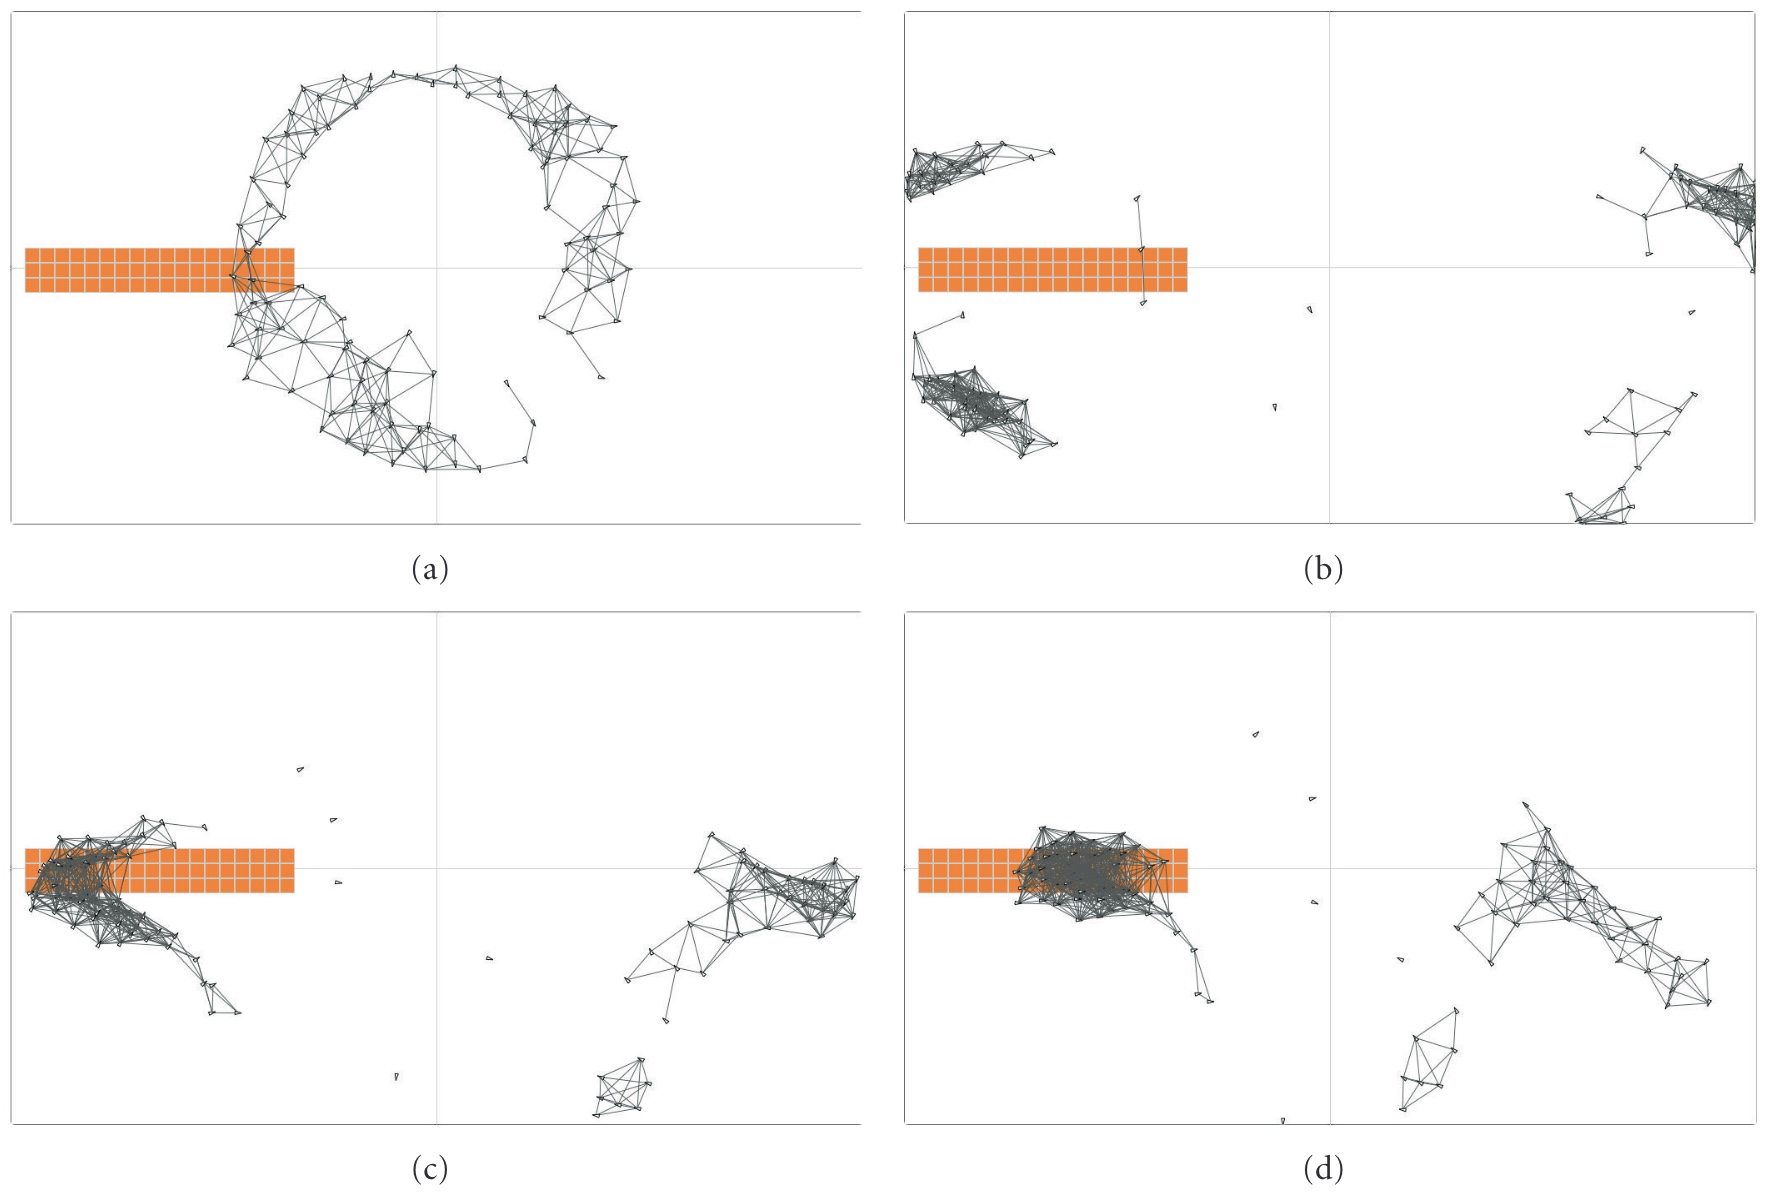 Optimization of swarm-based simulations